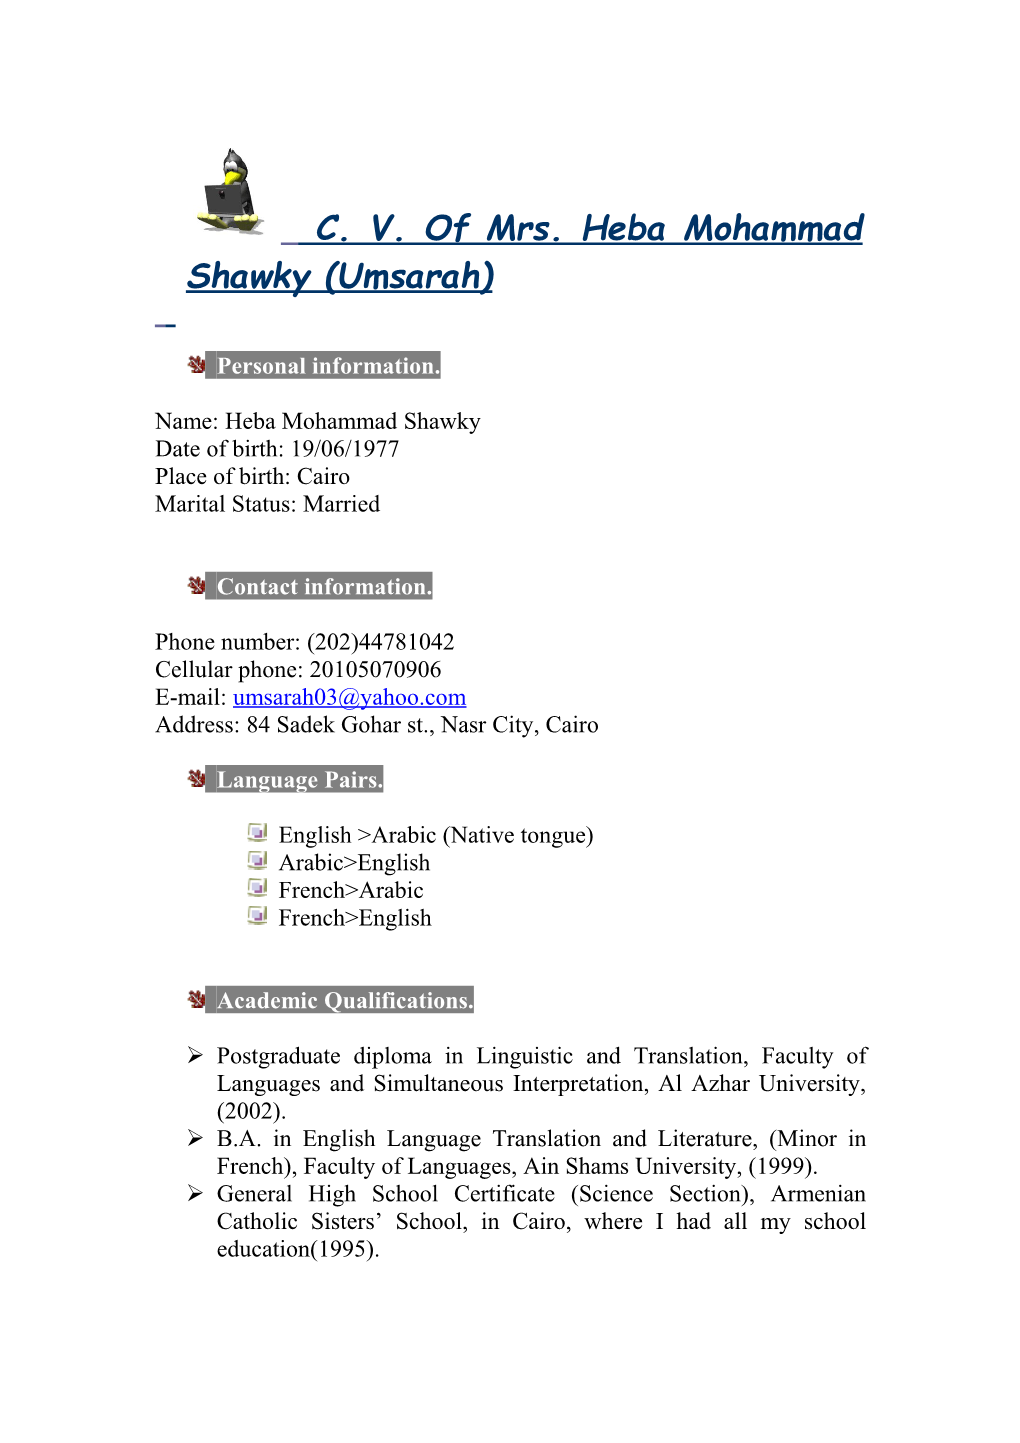 C. V. of Mrs. Heba Mohammad Shawky (Umsarah)